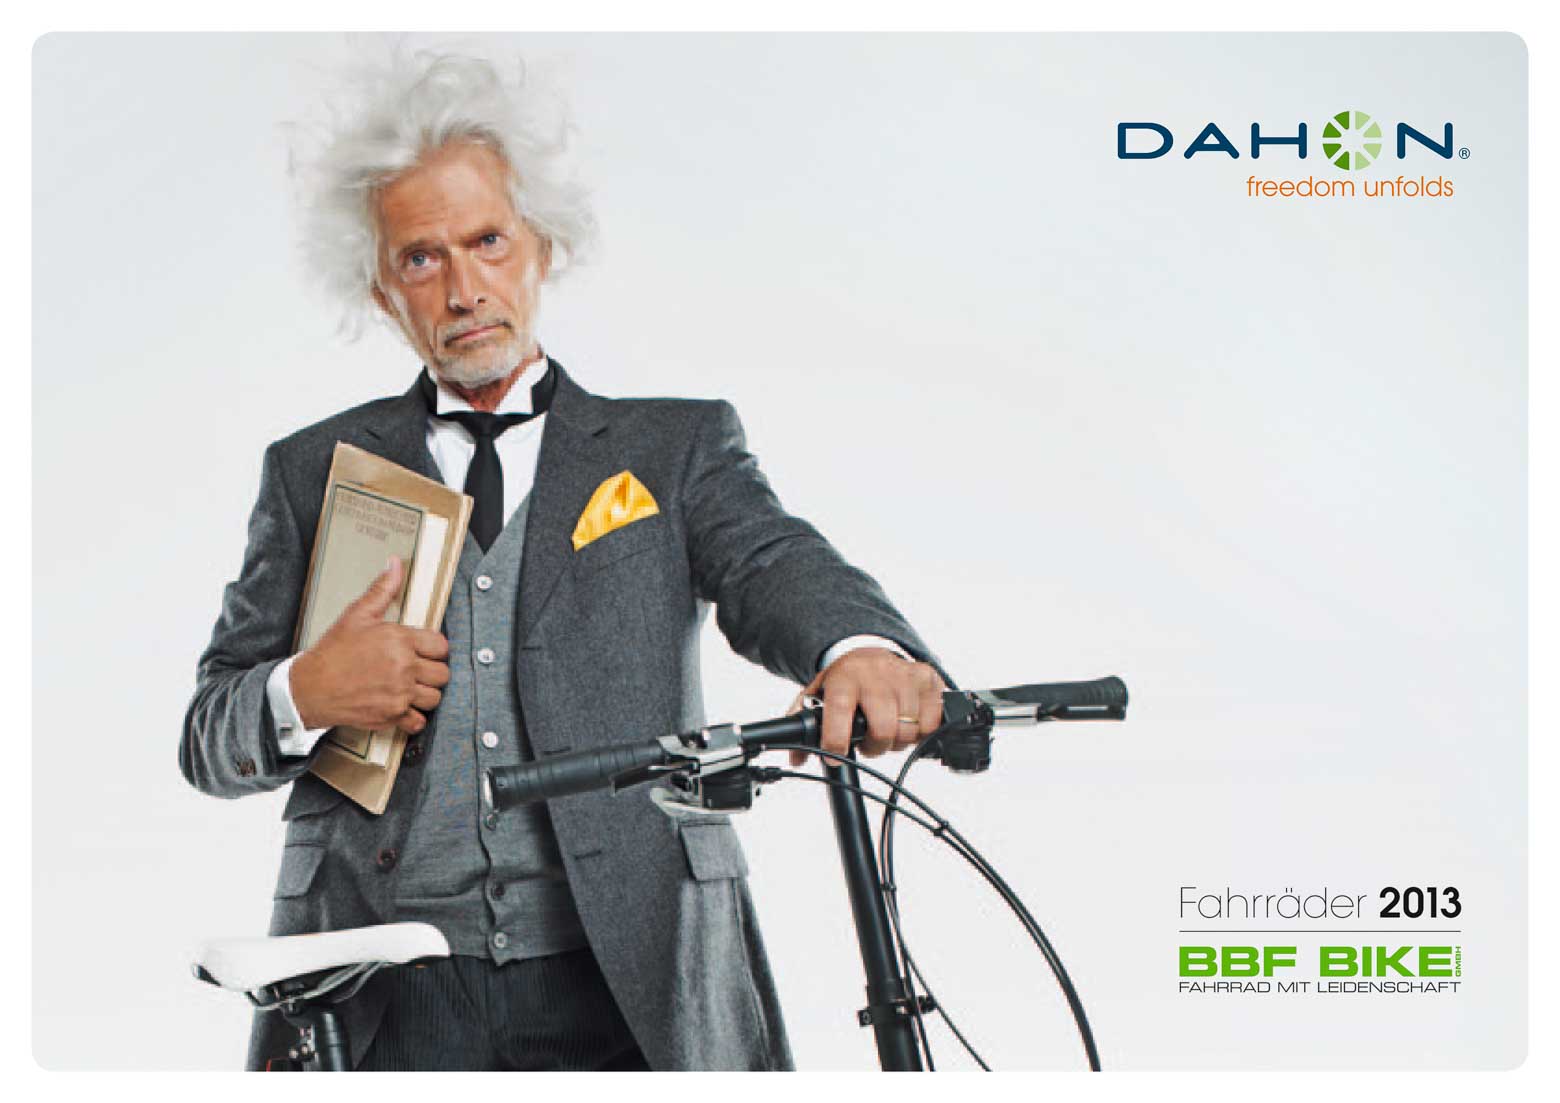 Dahon Fahrrader 2013 - page 001 main image